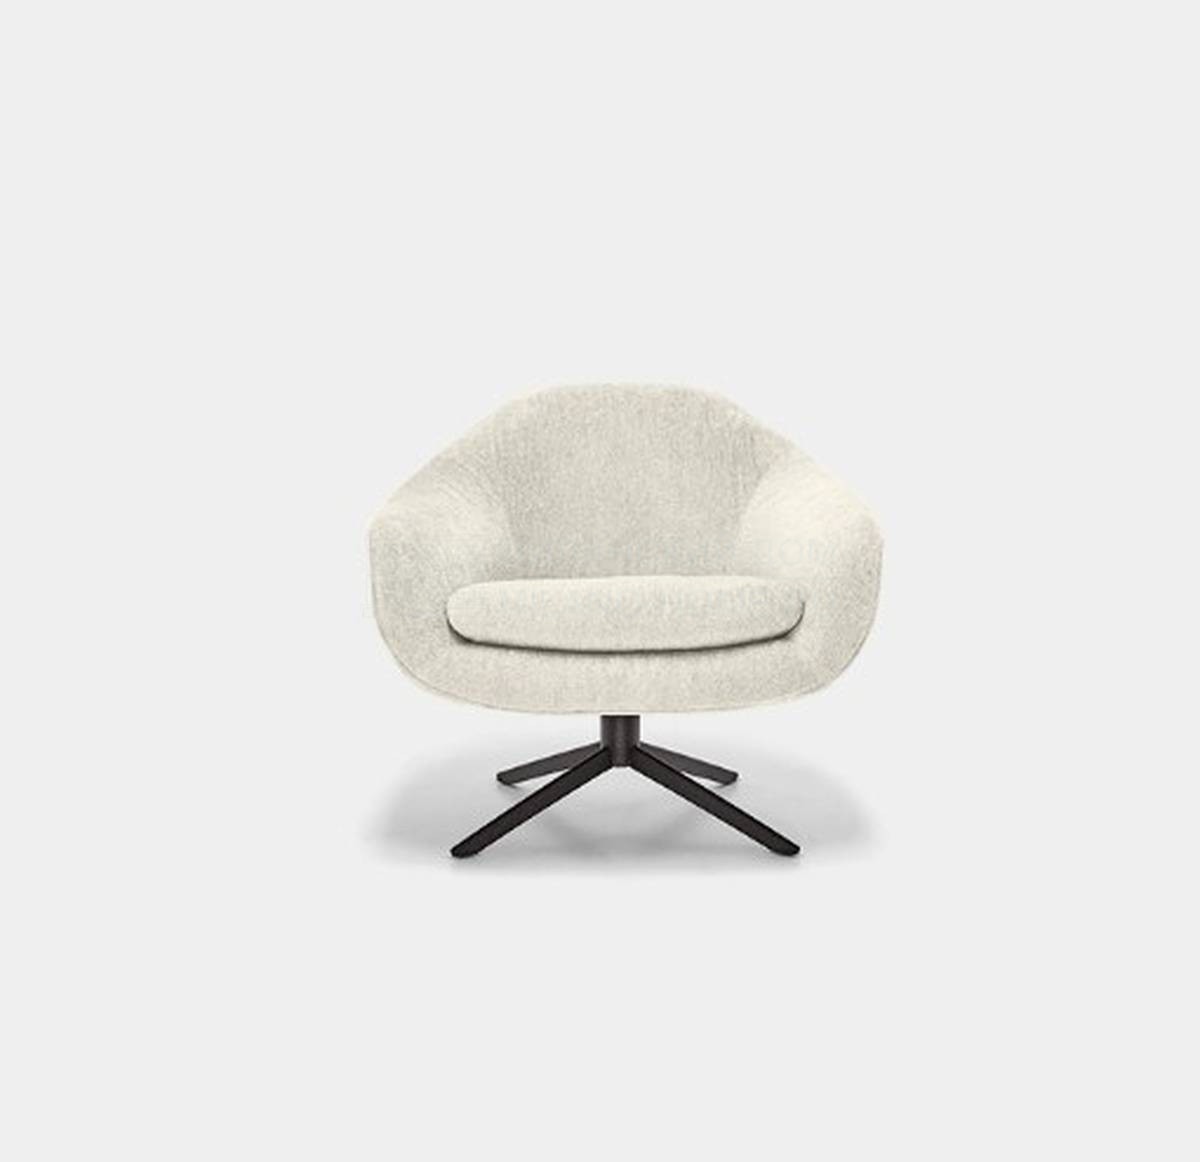 Кресло Bond armchair из Италии фабрики ARKETIPO